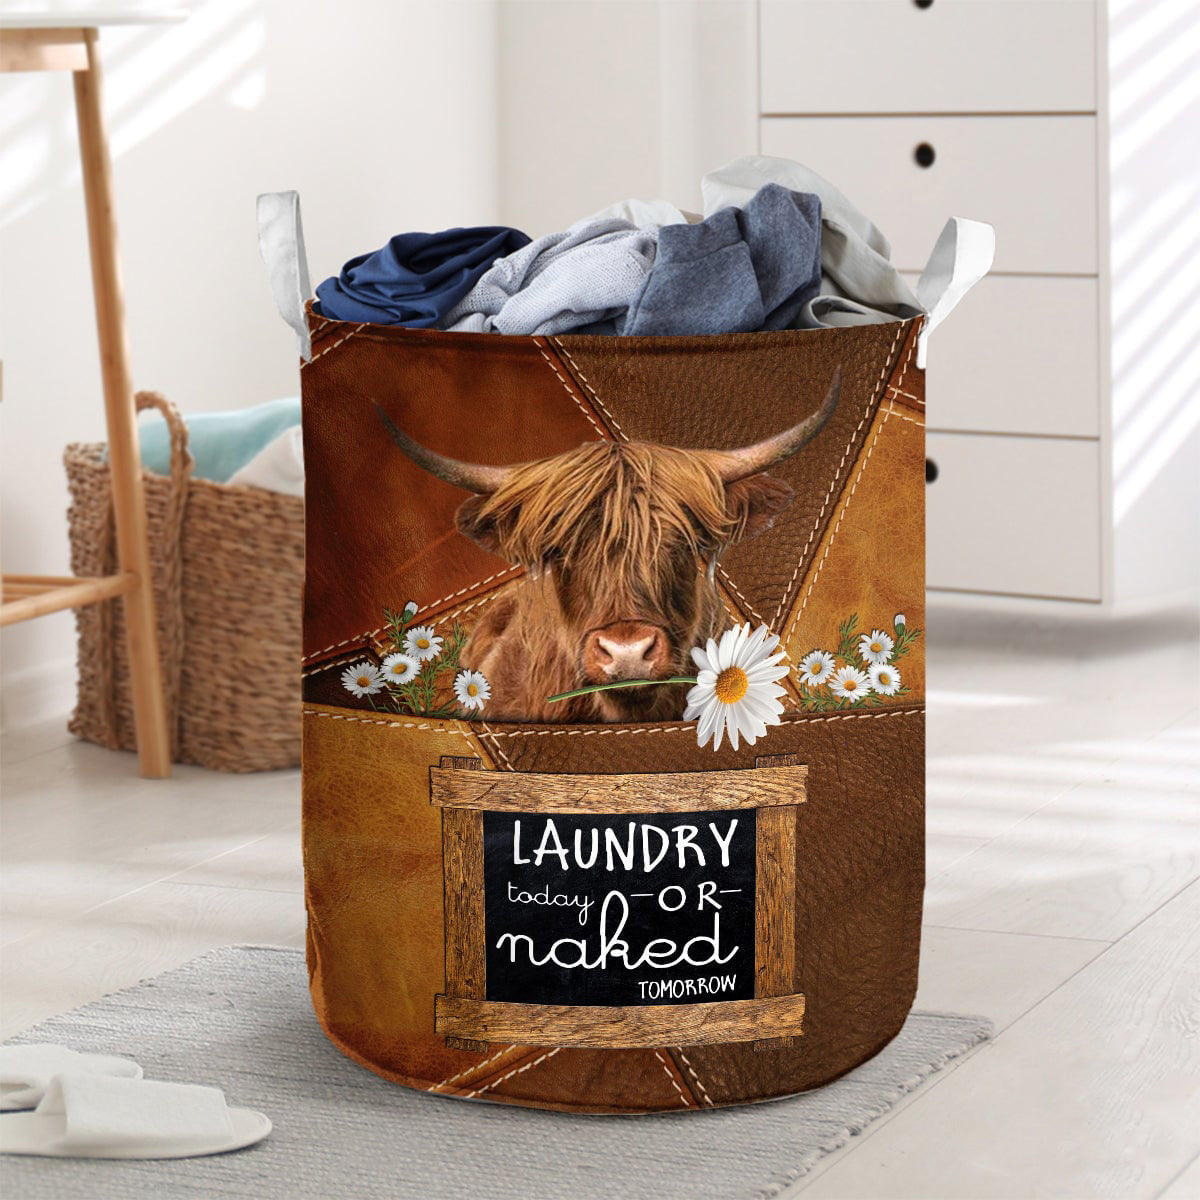 Highland-laundry today or naked tomorrow laundry basket